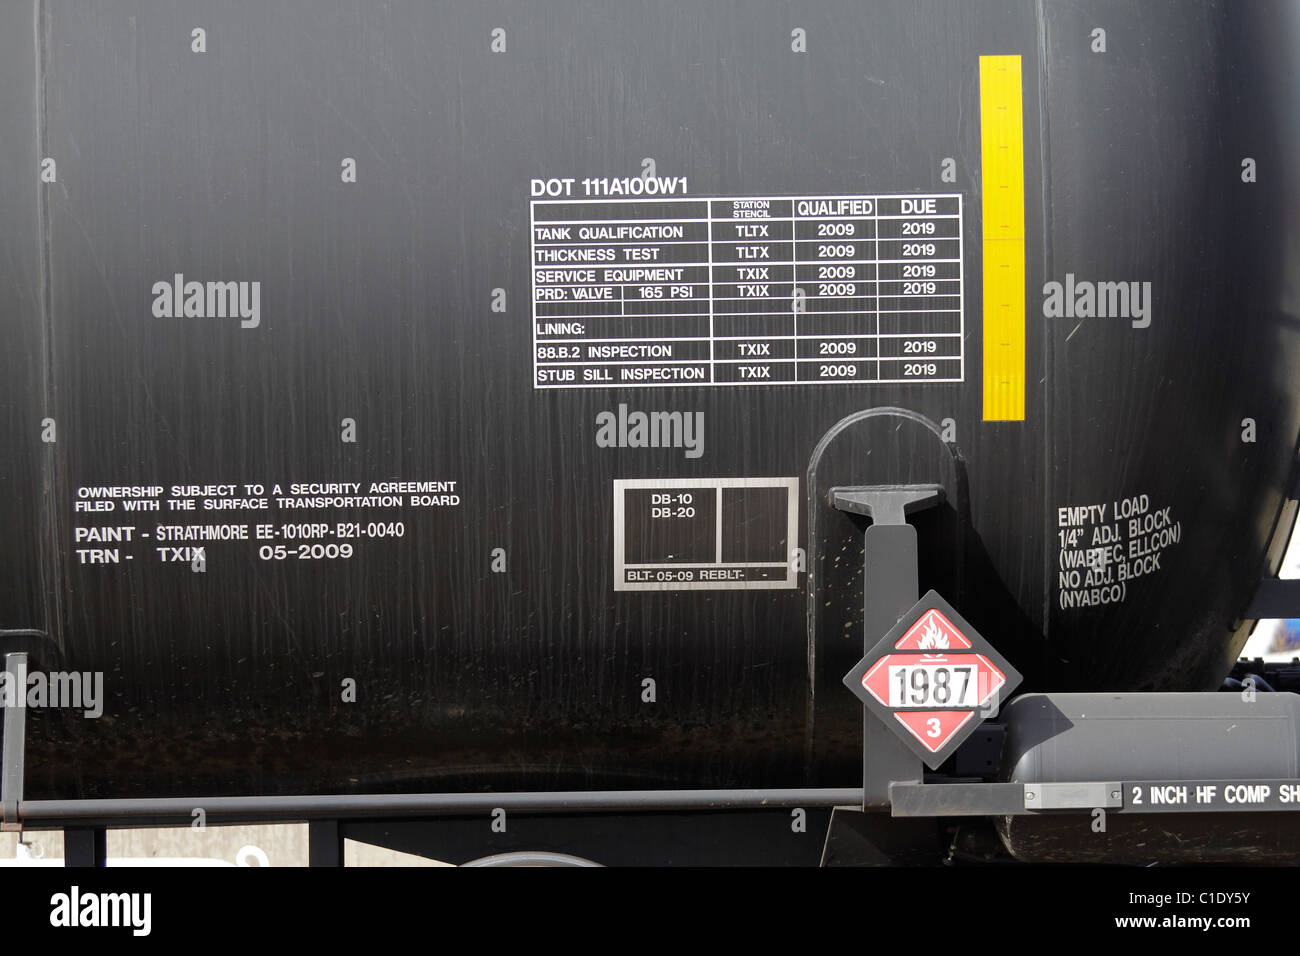 Depósito de etanol nomenclatura en vagones de ferrocarril Foto de stock